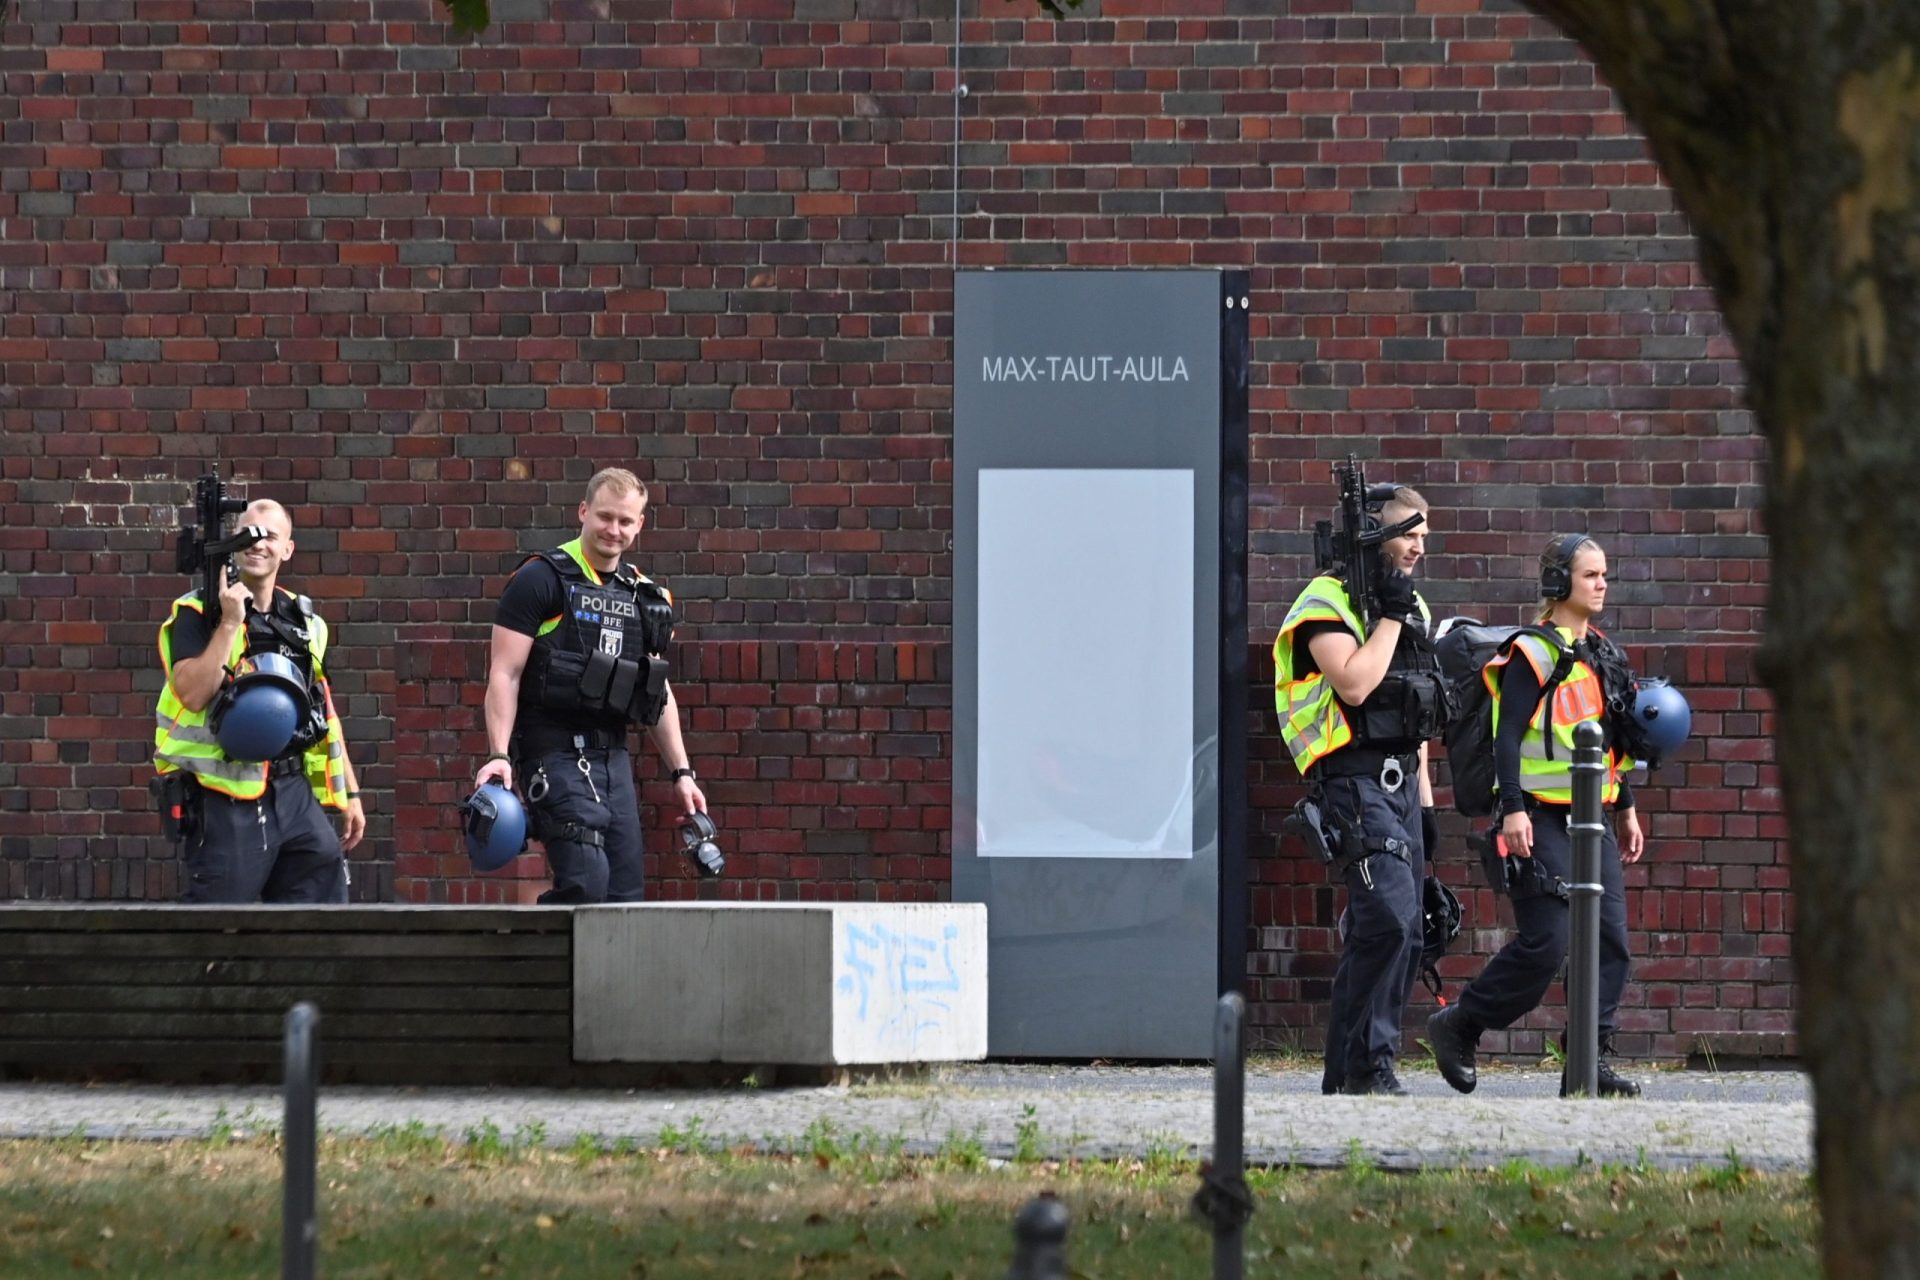 Megaoperação policial em Berlim teve origem num falso alarme